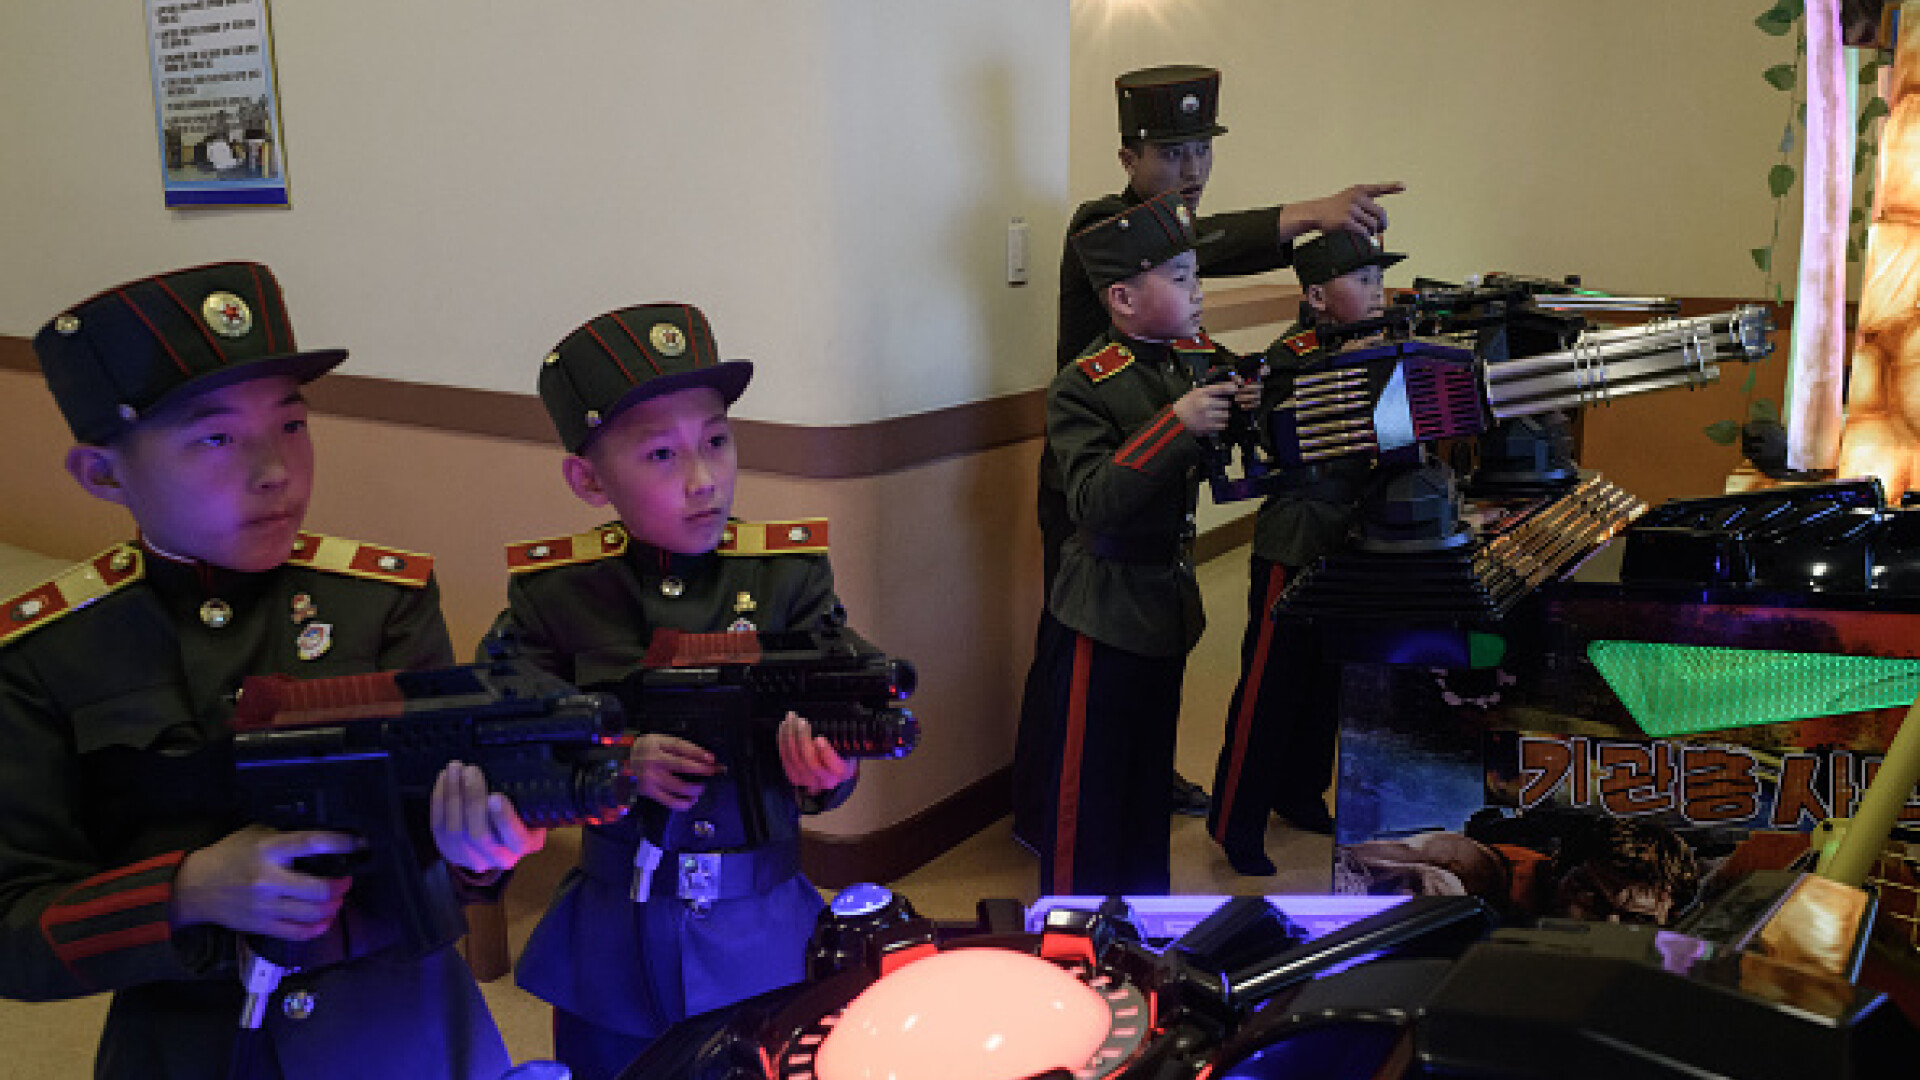 scoala militara coreea de nord - 5